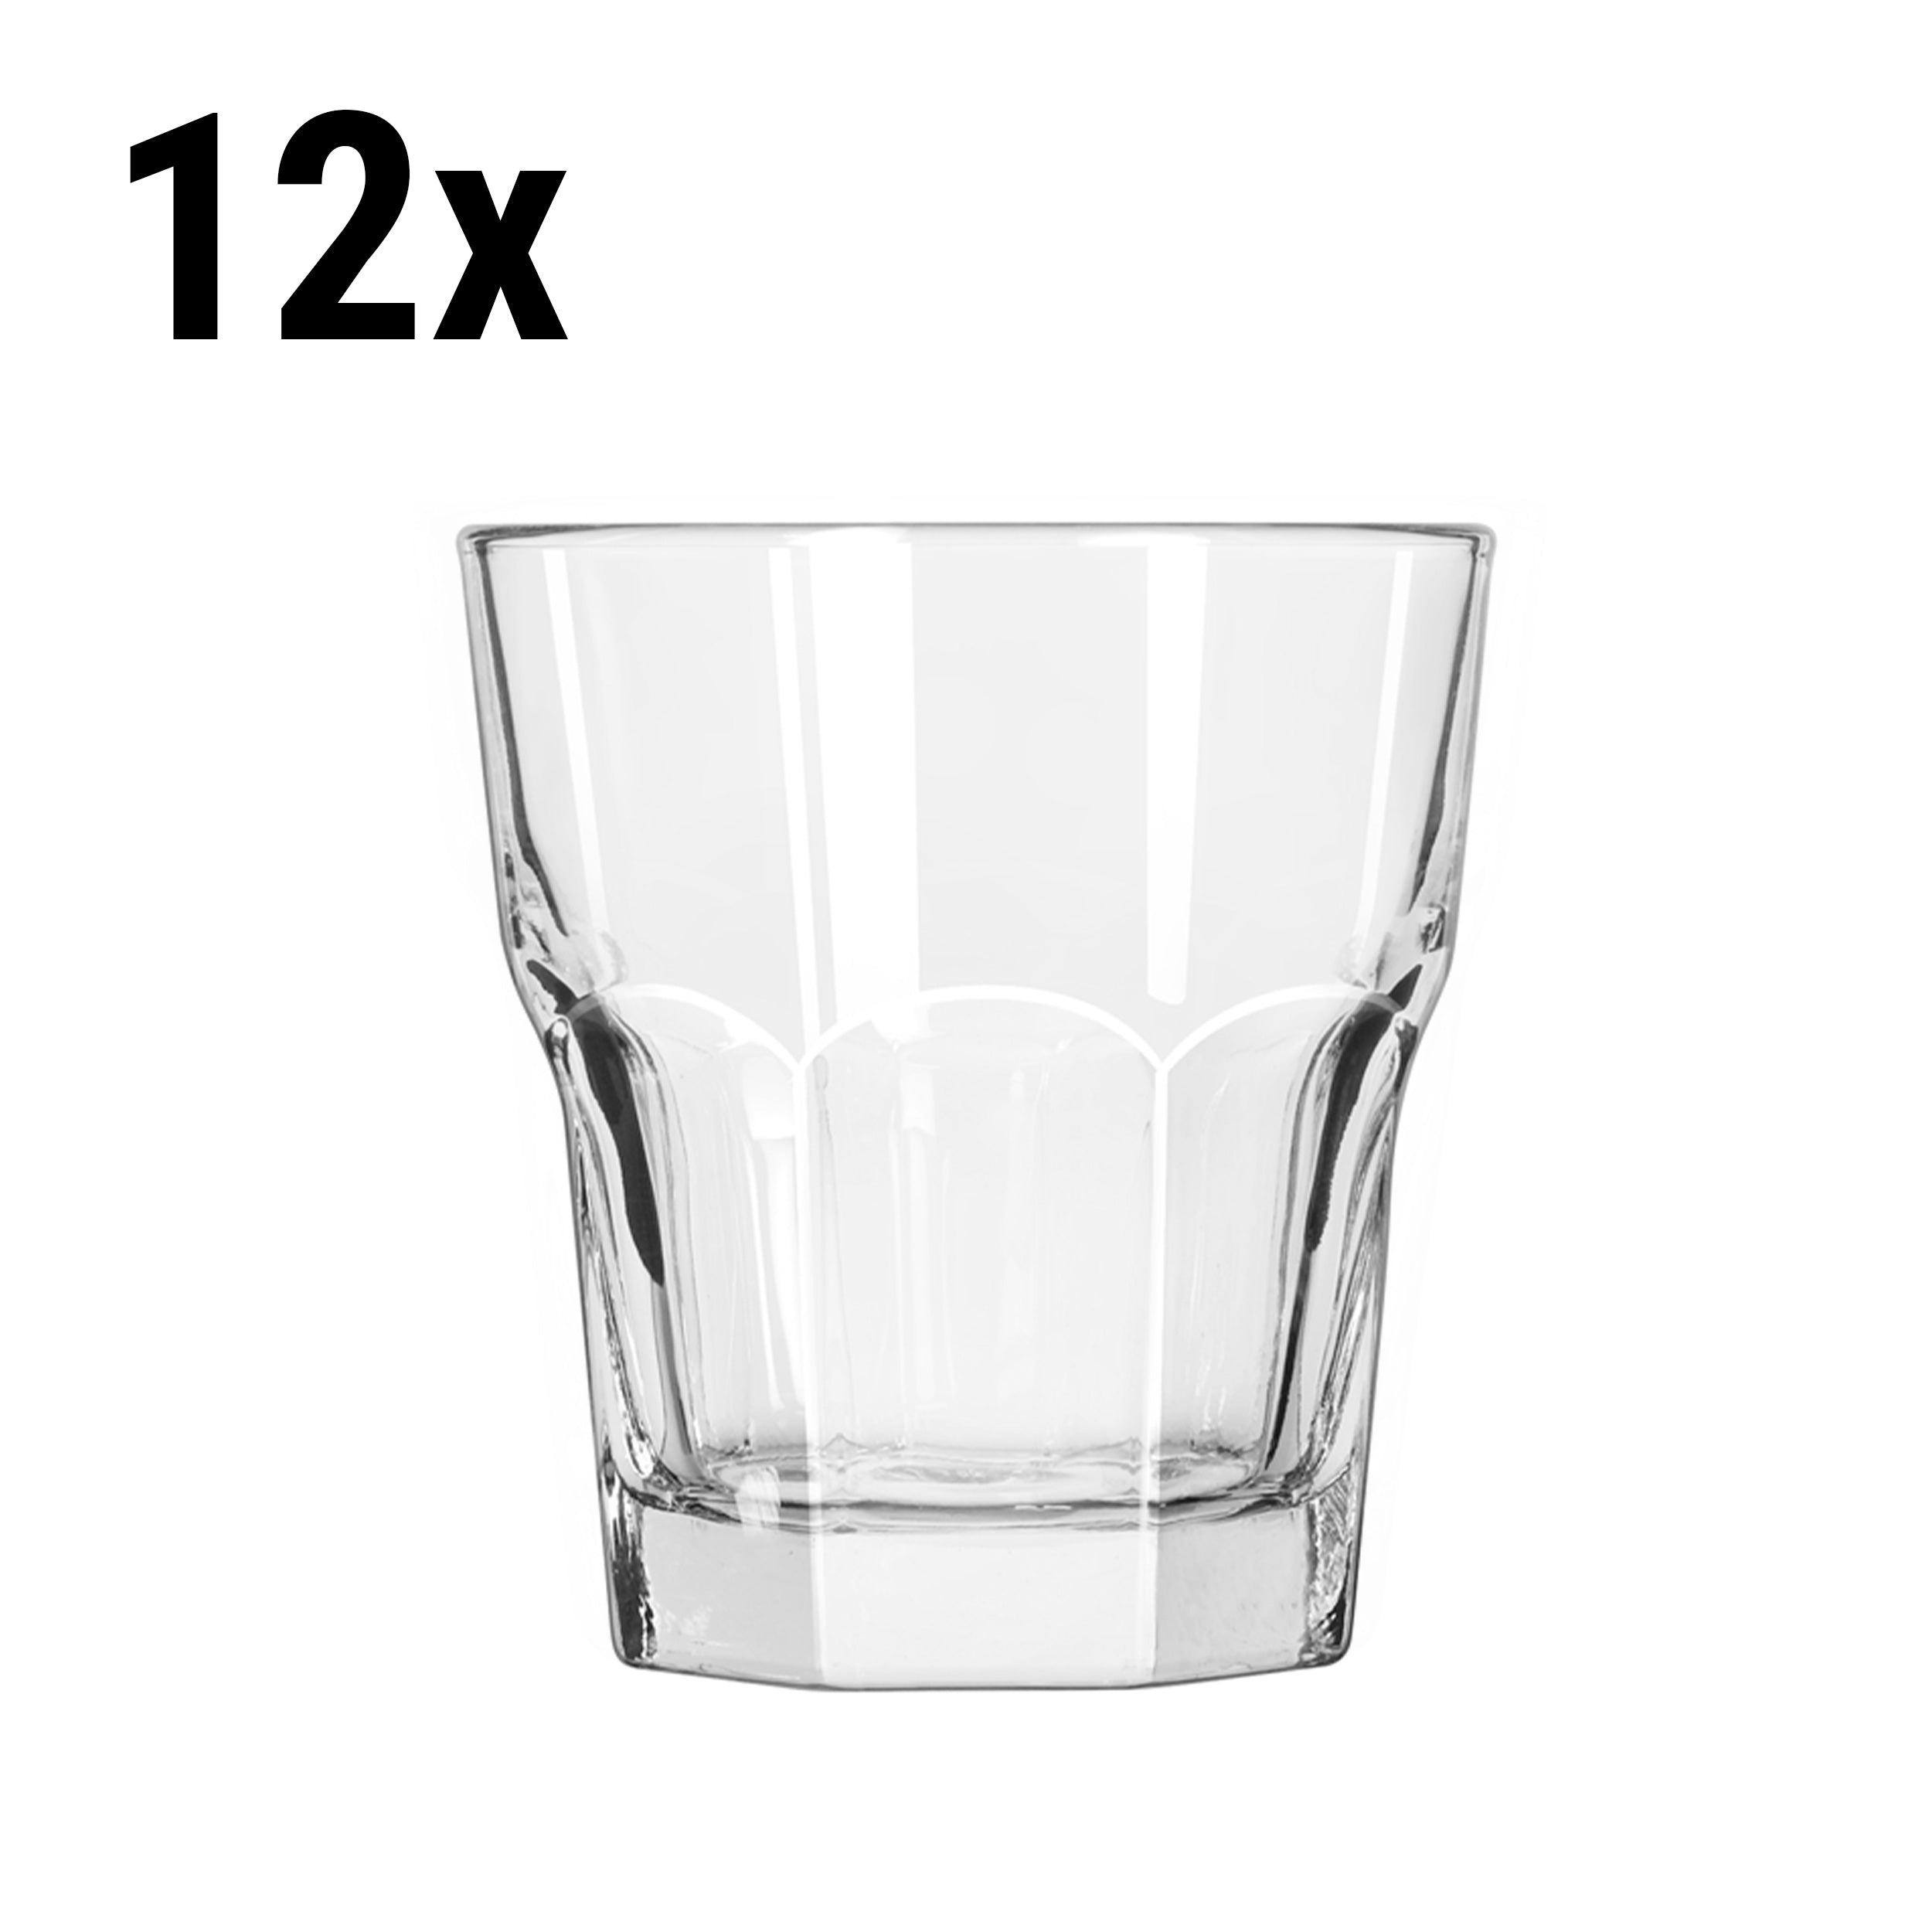 (12 stk.) PRAGUE - Drikkeglas til alle formål - 29 cl - Transparent